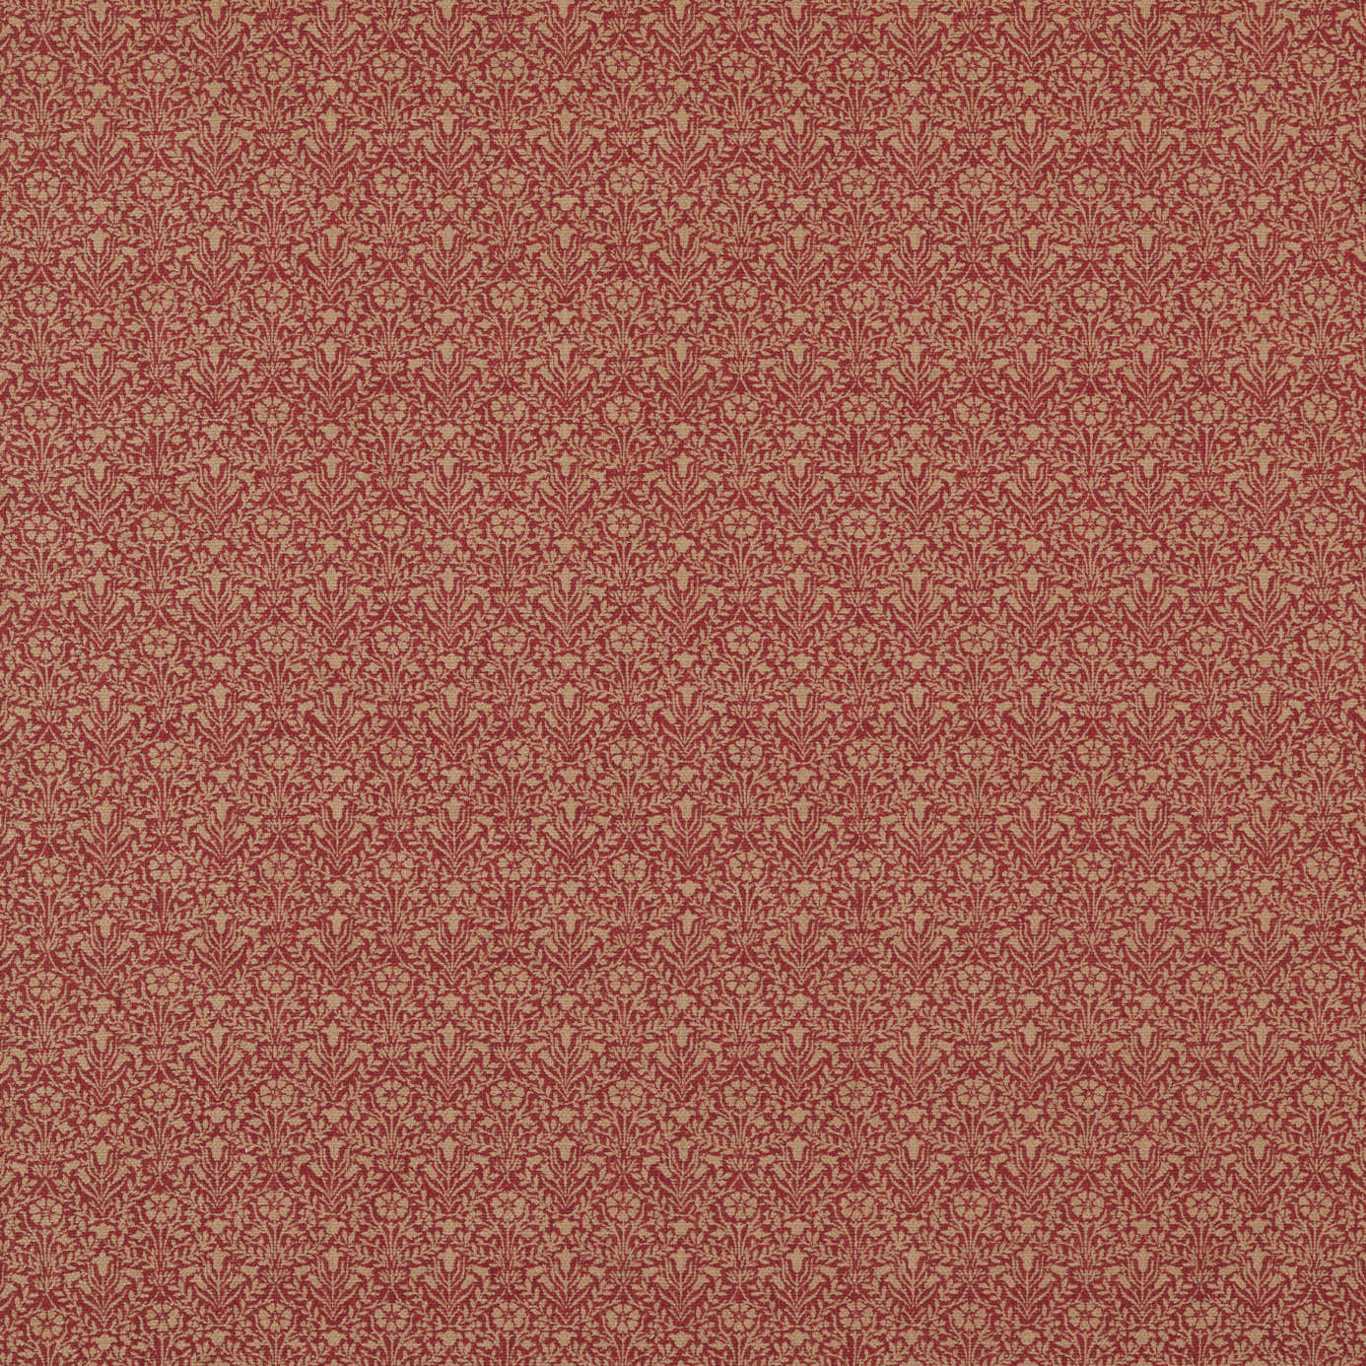 Bellflowers Weave Fabric by Morris & Co. - DM4U236527 - Russet